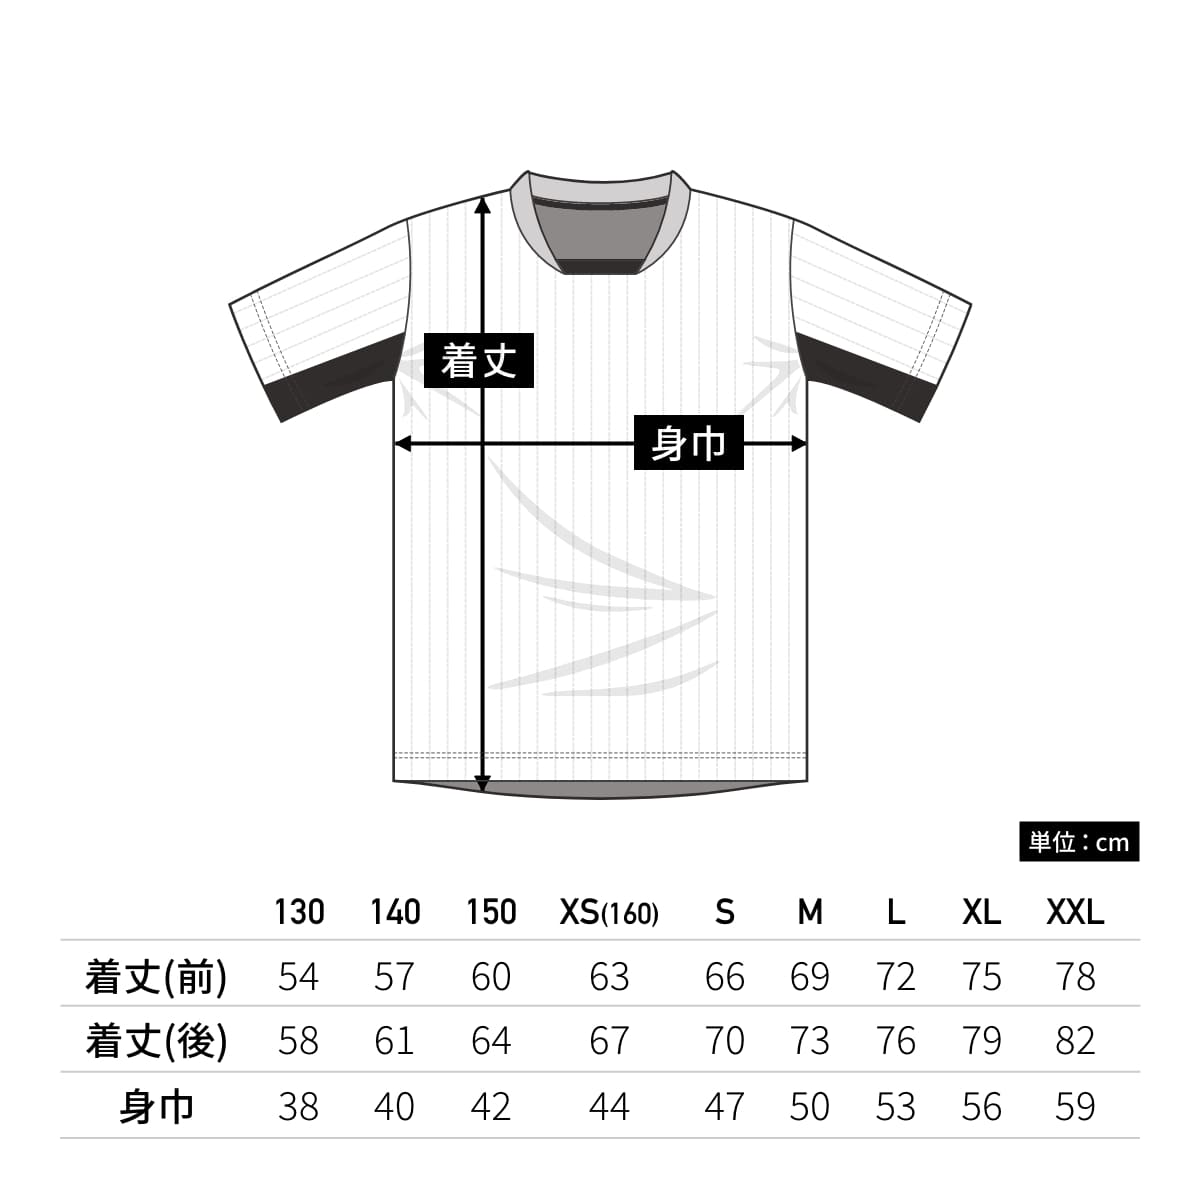 【送料無料】サッカーゲームシャツ | ユニフォーム | 1枚 | P1940 | イエロー